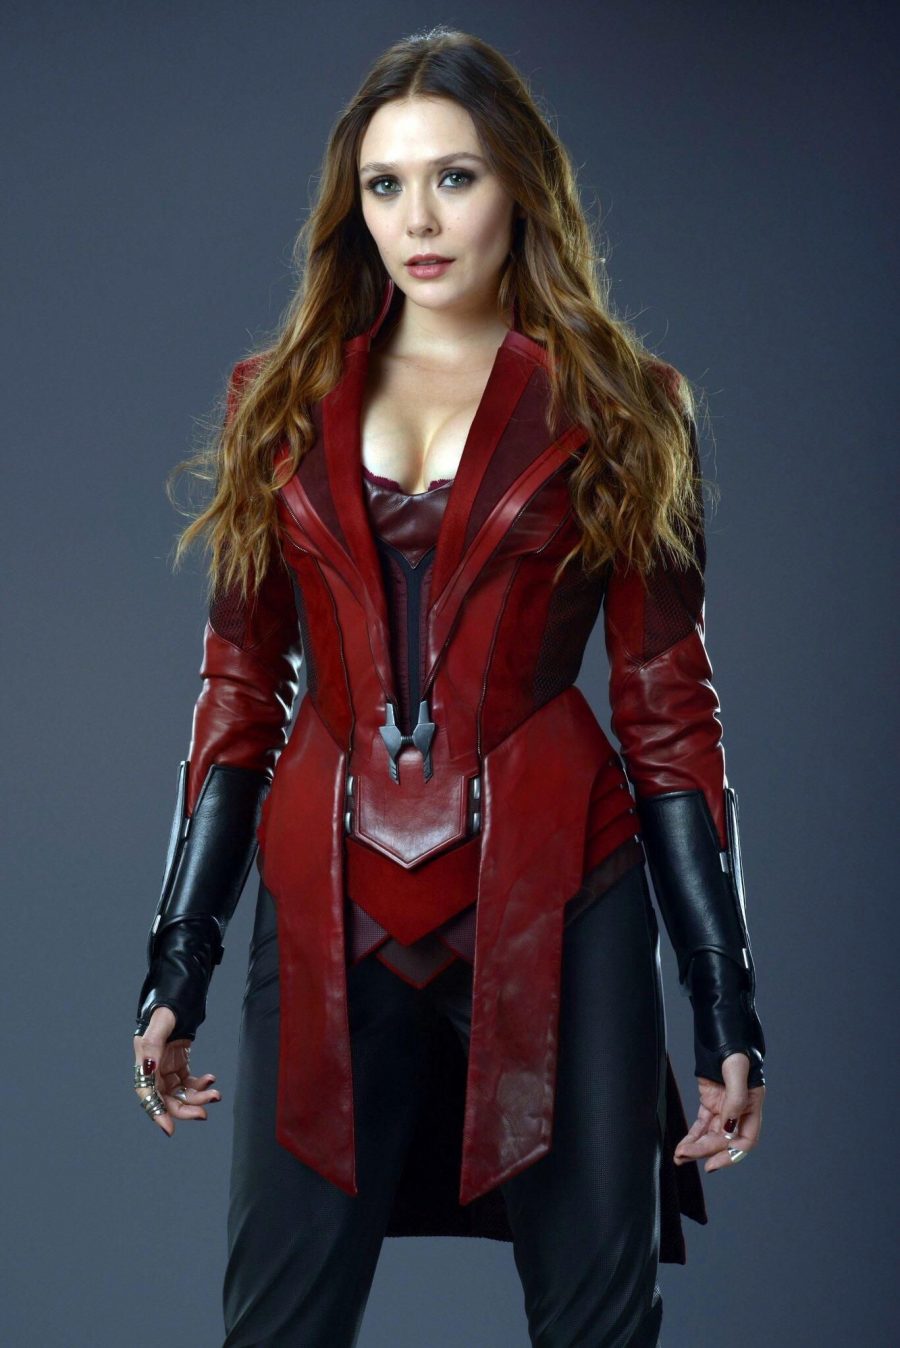 ส่องสาว Avengers ถ้าเธอถอดชุดฮีโร่จะเป็นยังไง 12